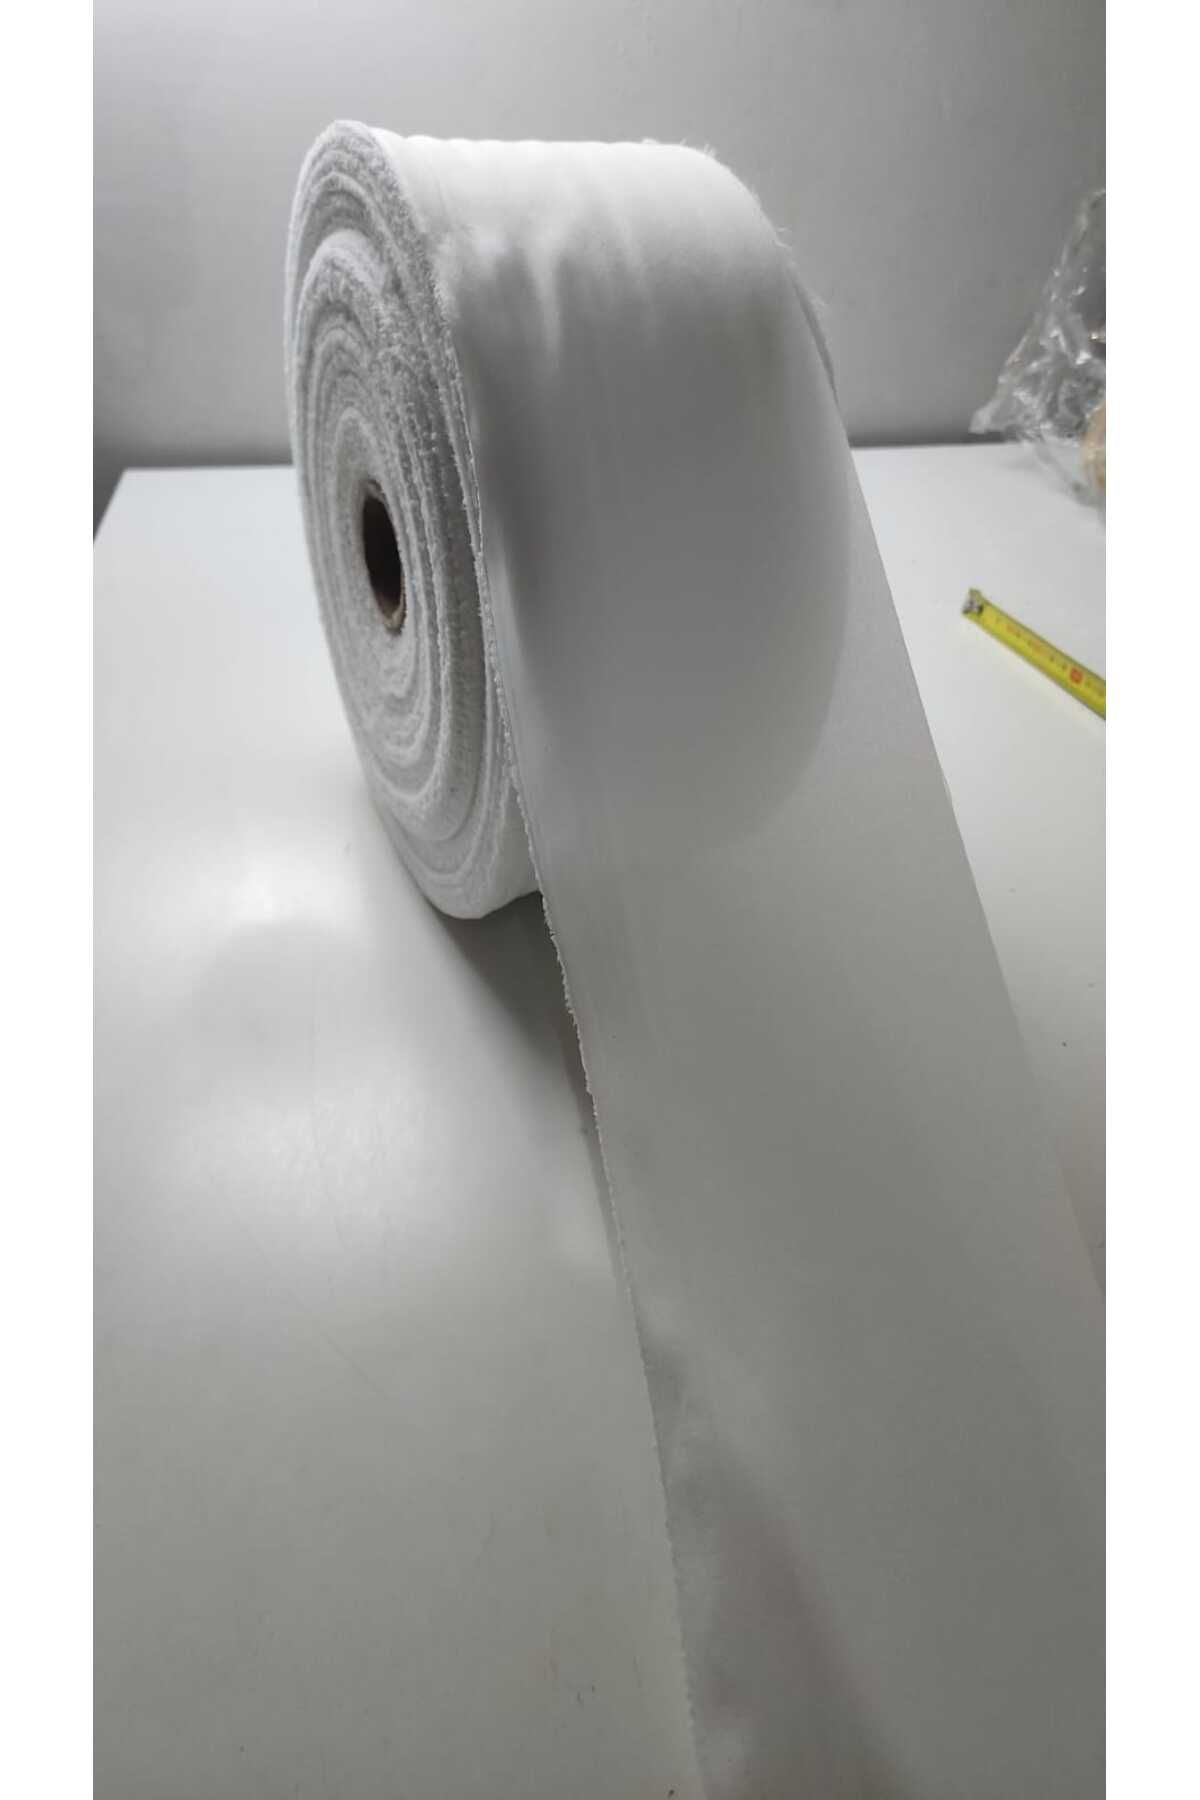 BERKE TUHAFIYE AKSESUAR Genişlik 10cm Bez Tela Tek Tarafı Ütü İle Yapışan Beyaz Bez Tela 10 Metre